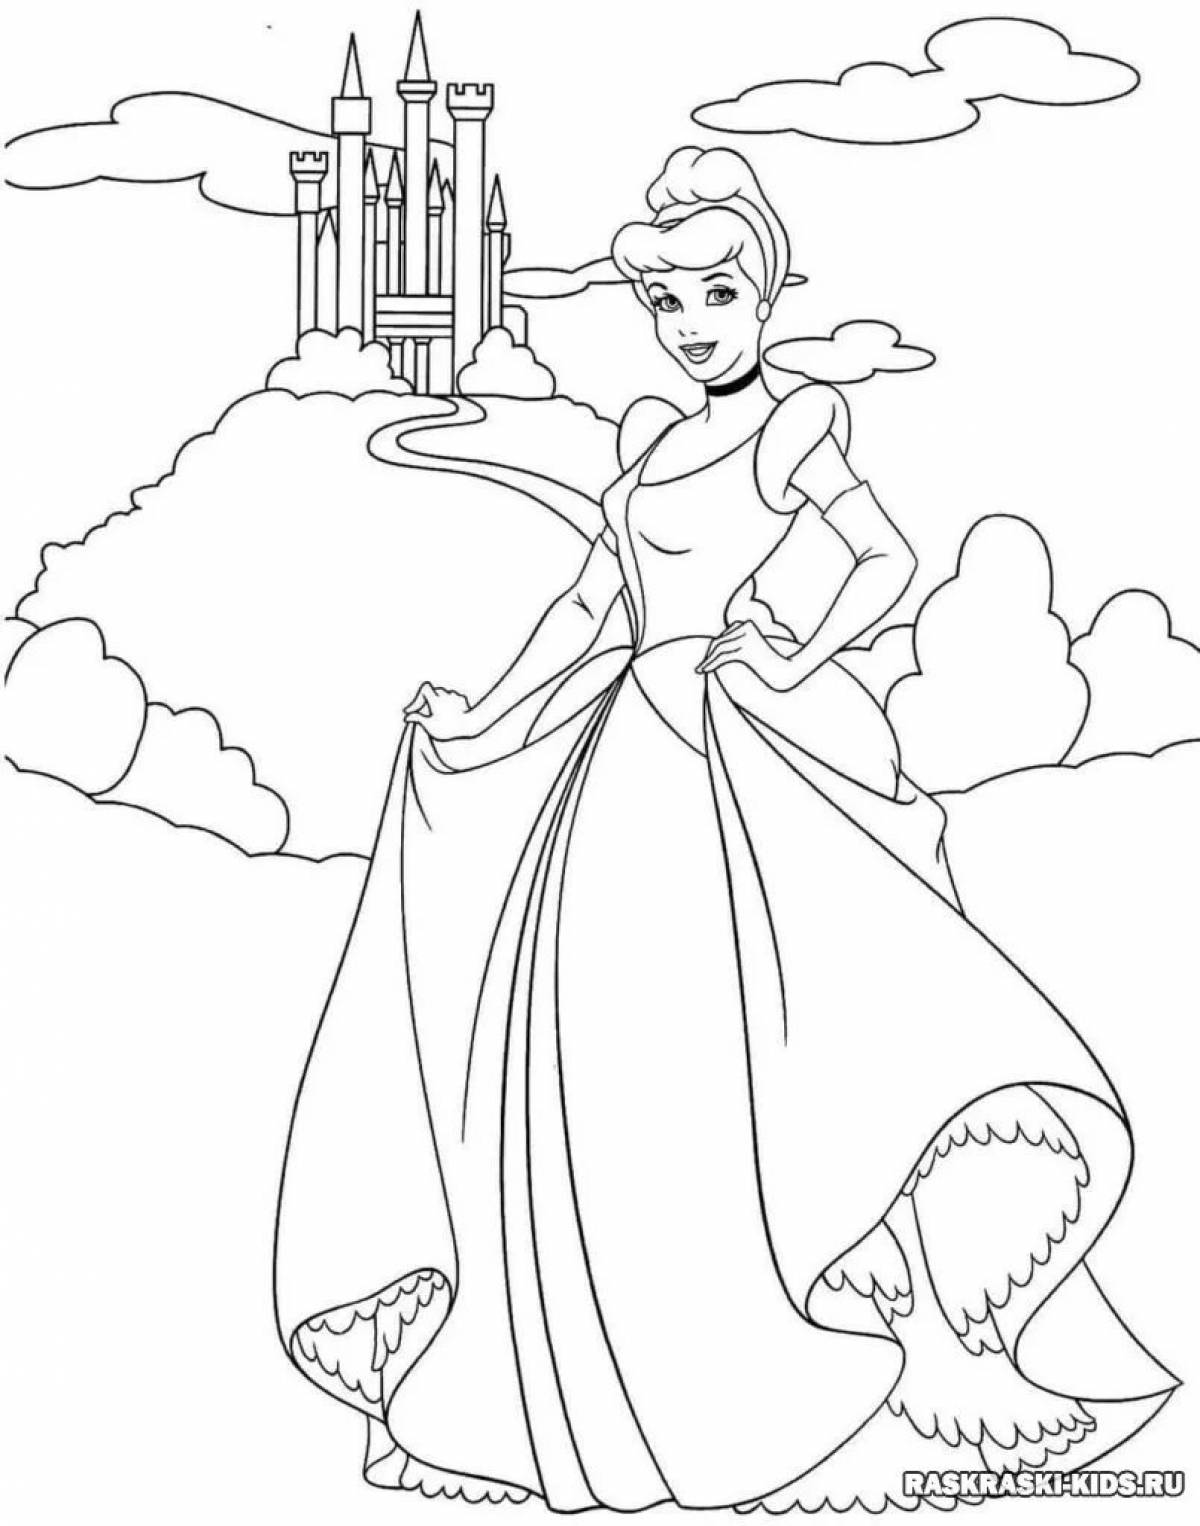 Раскраски из мультфильма Золушка (Cinderella). Сказка братьев Гримм Золушка с картинками скачать